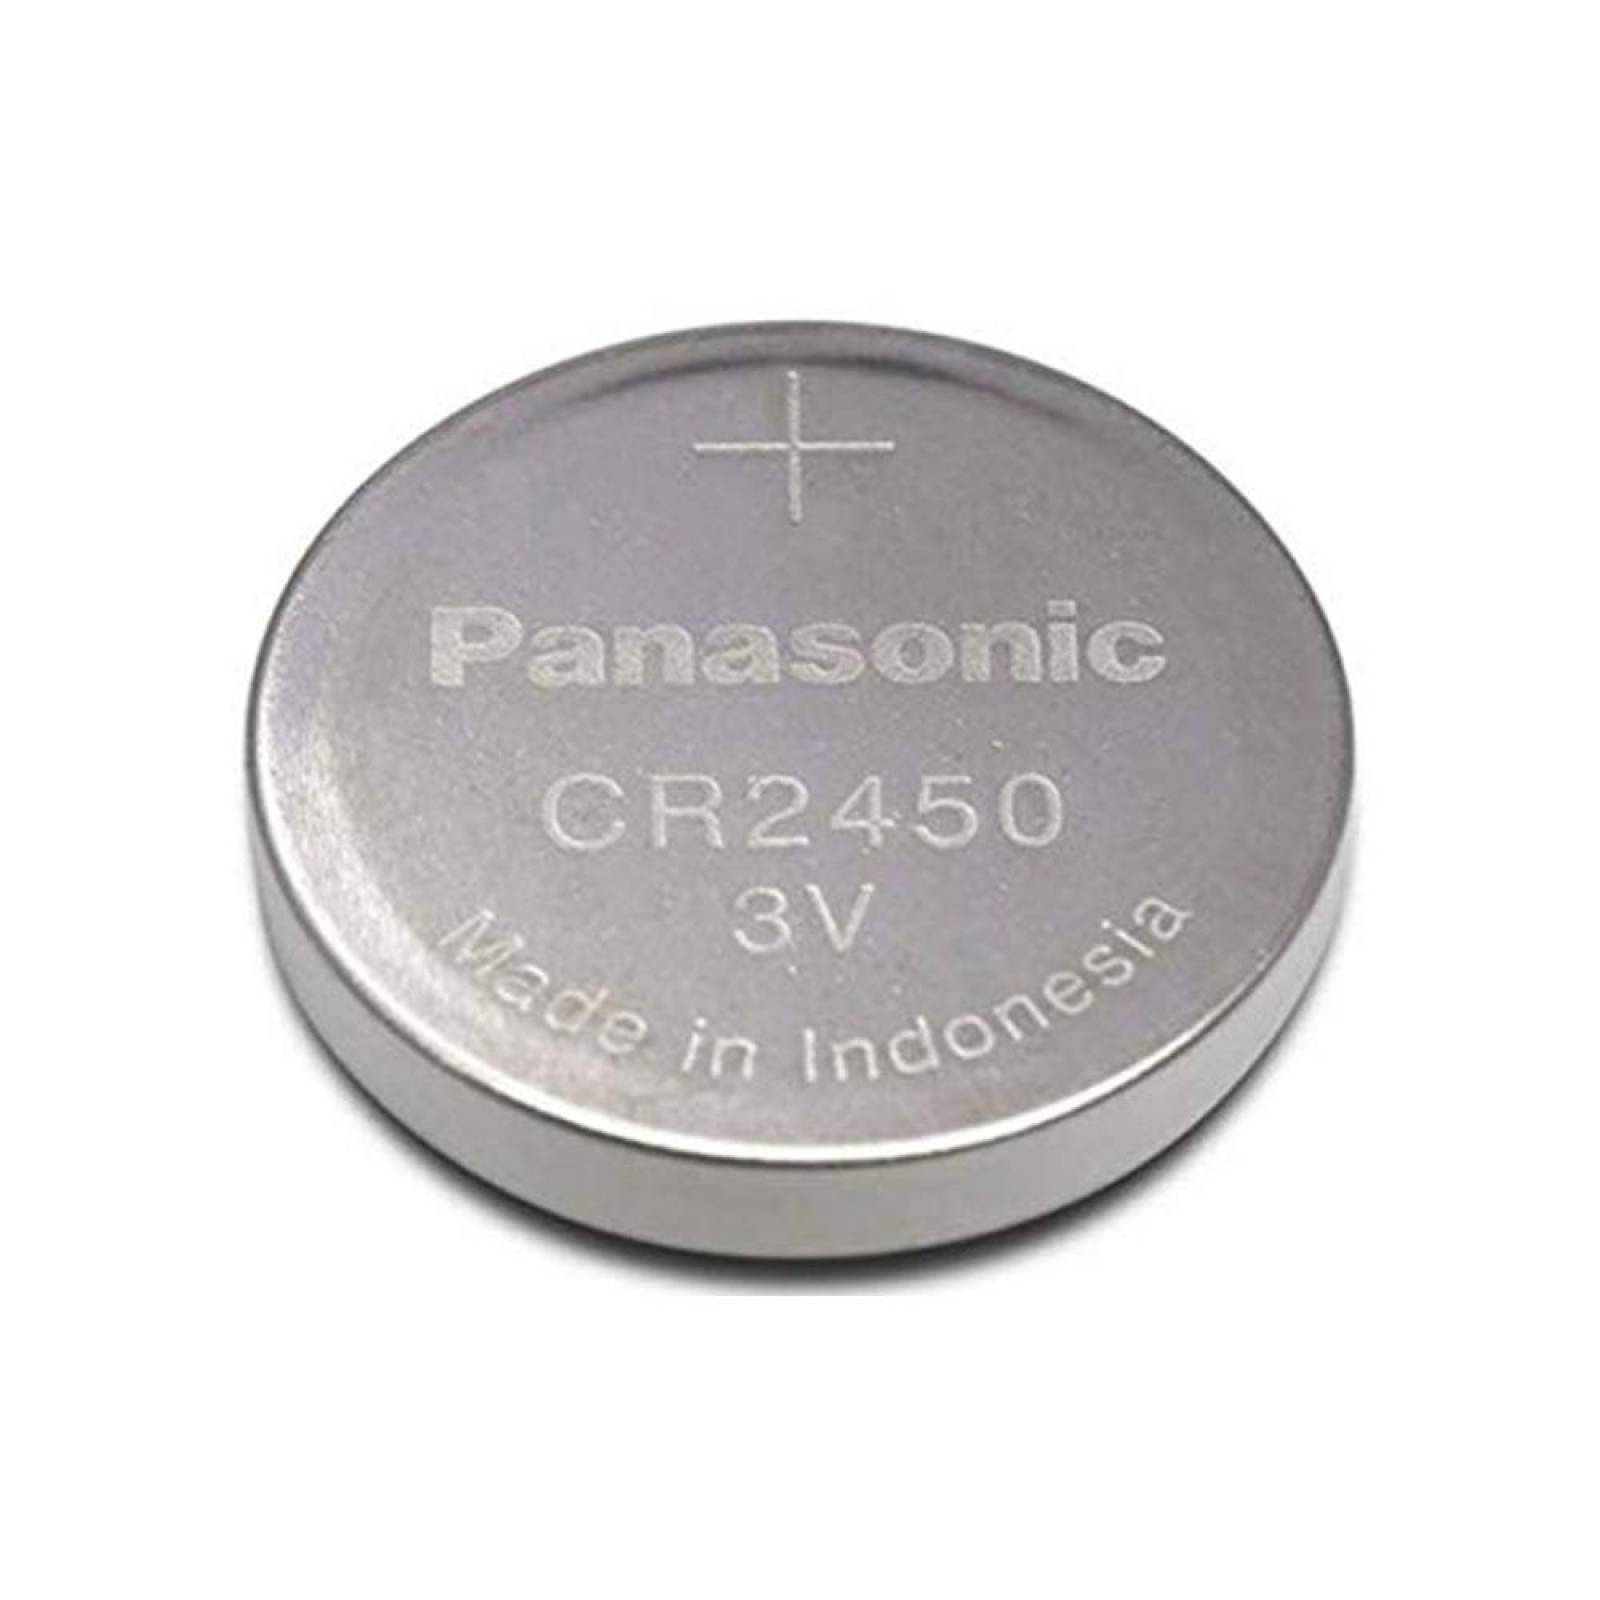 Pila Panasonic Lto Cr2450 3v 620mah 